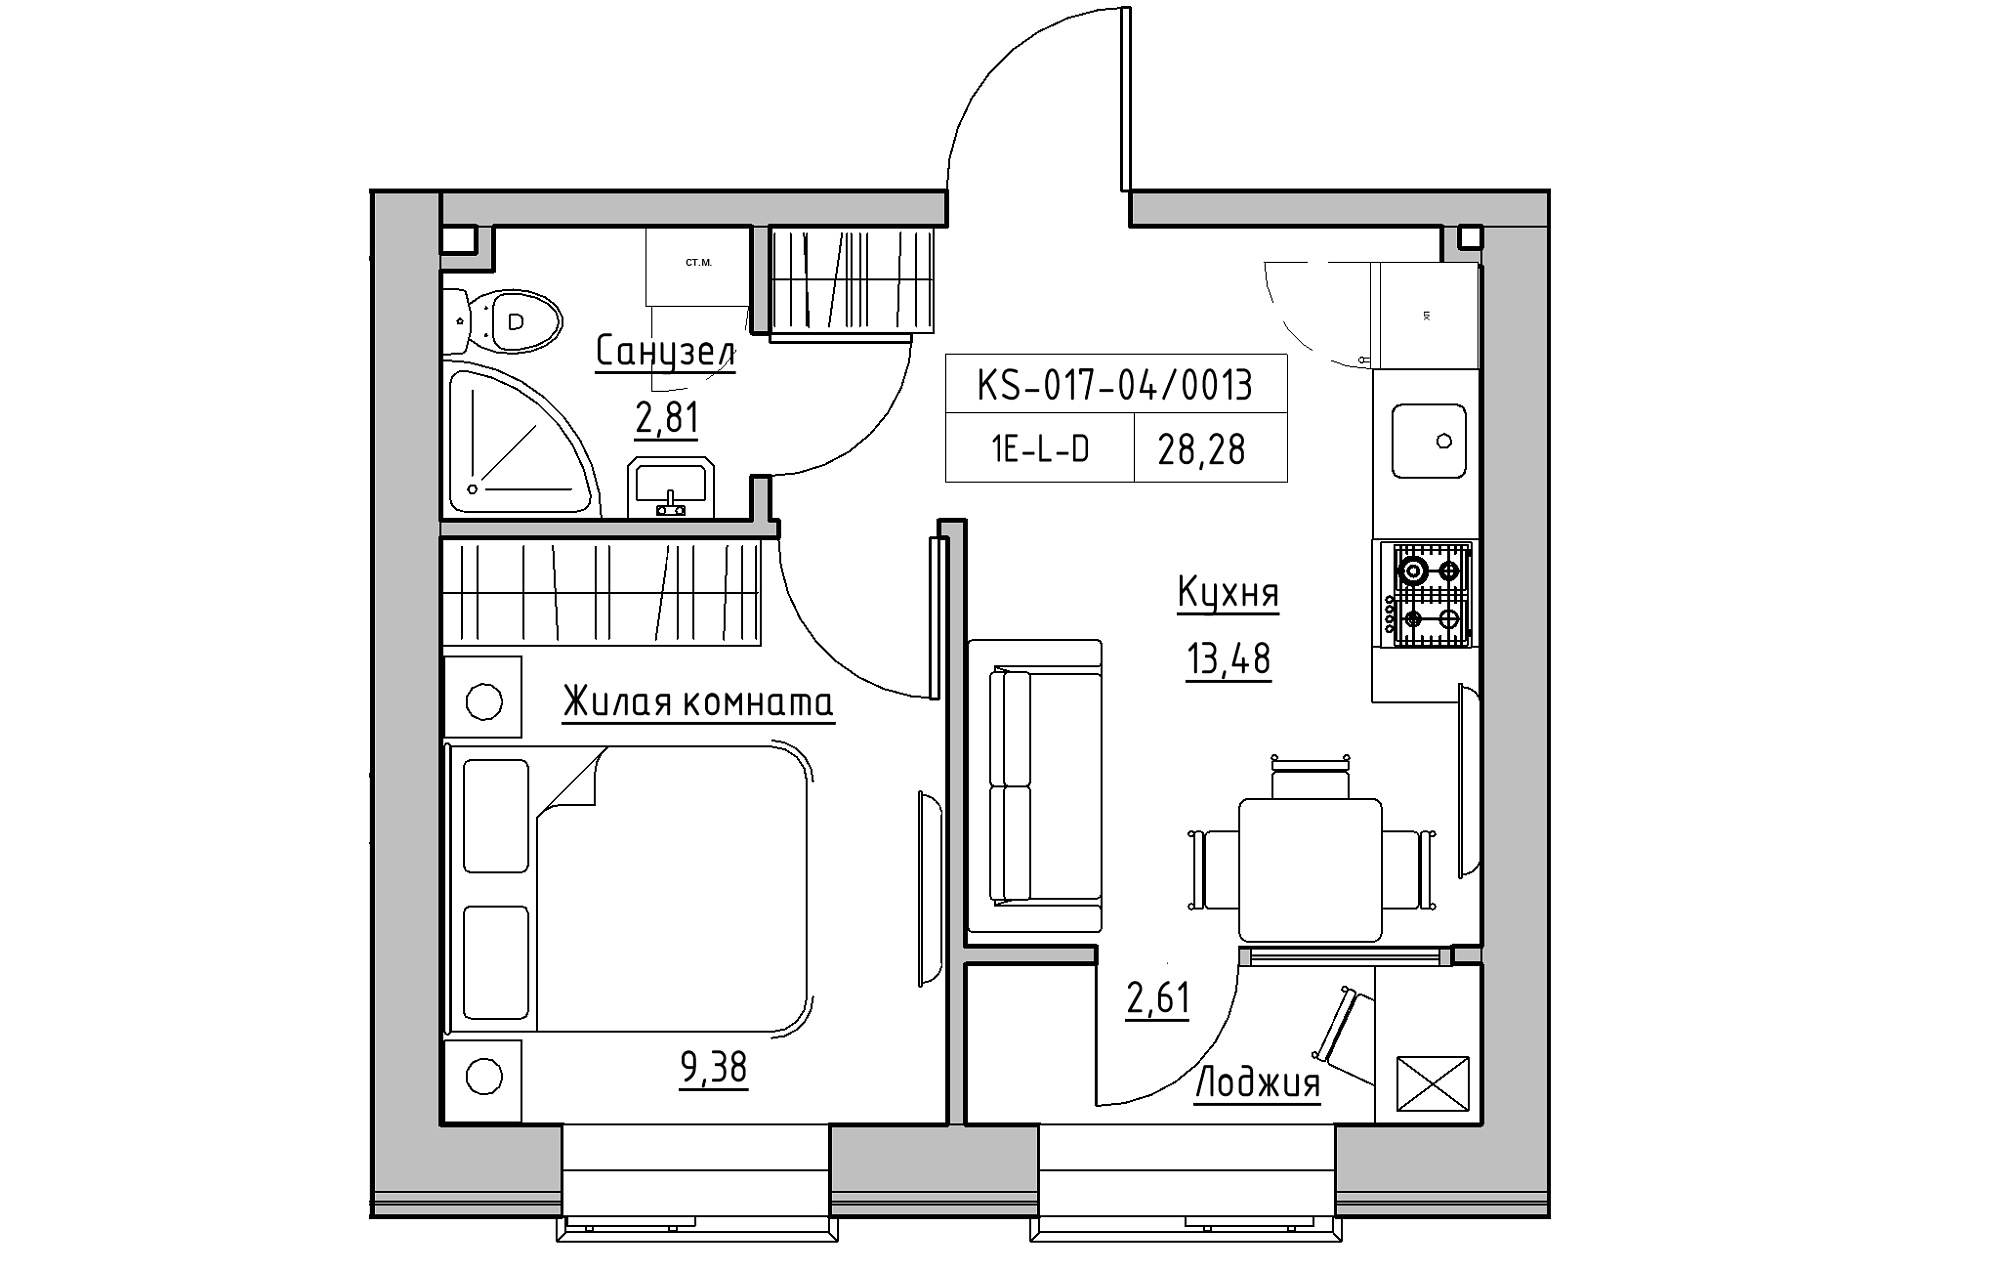 Планування 1-к квартира площею 28.28м2, KS-017-04/0013.